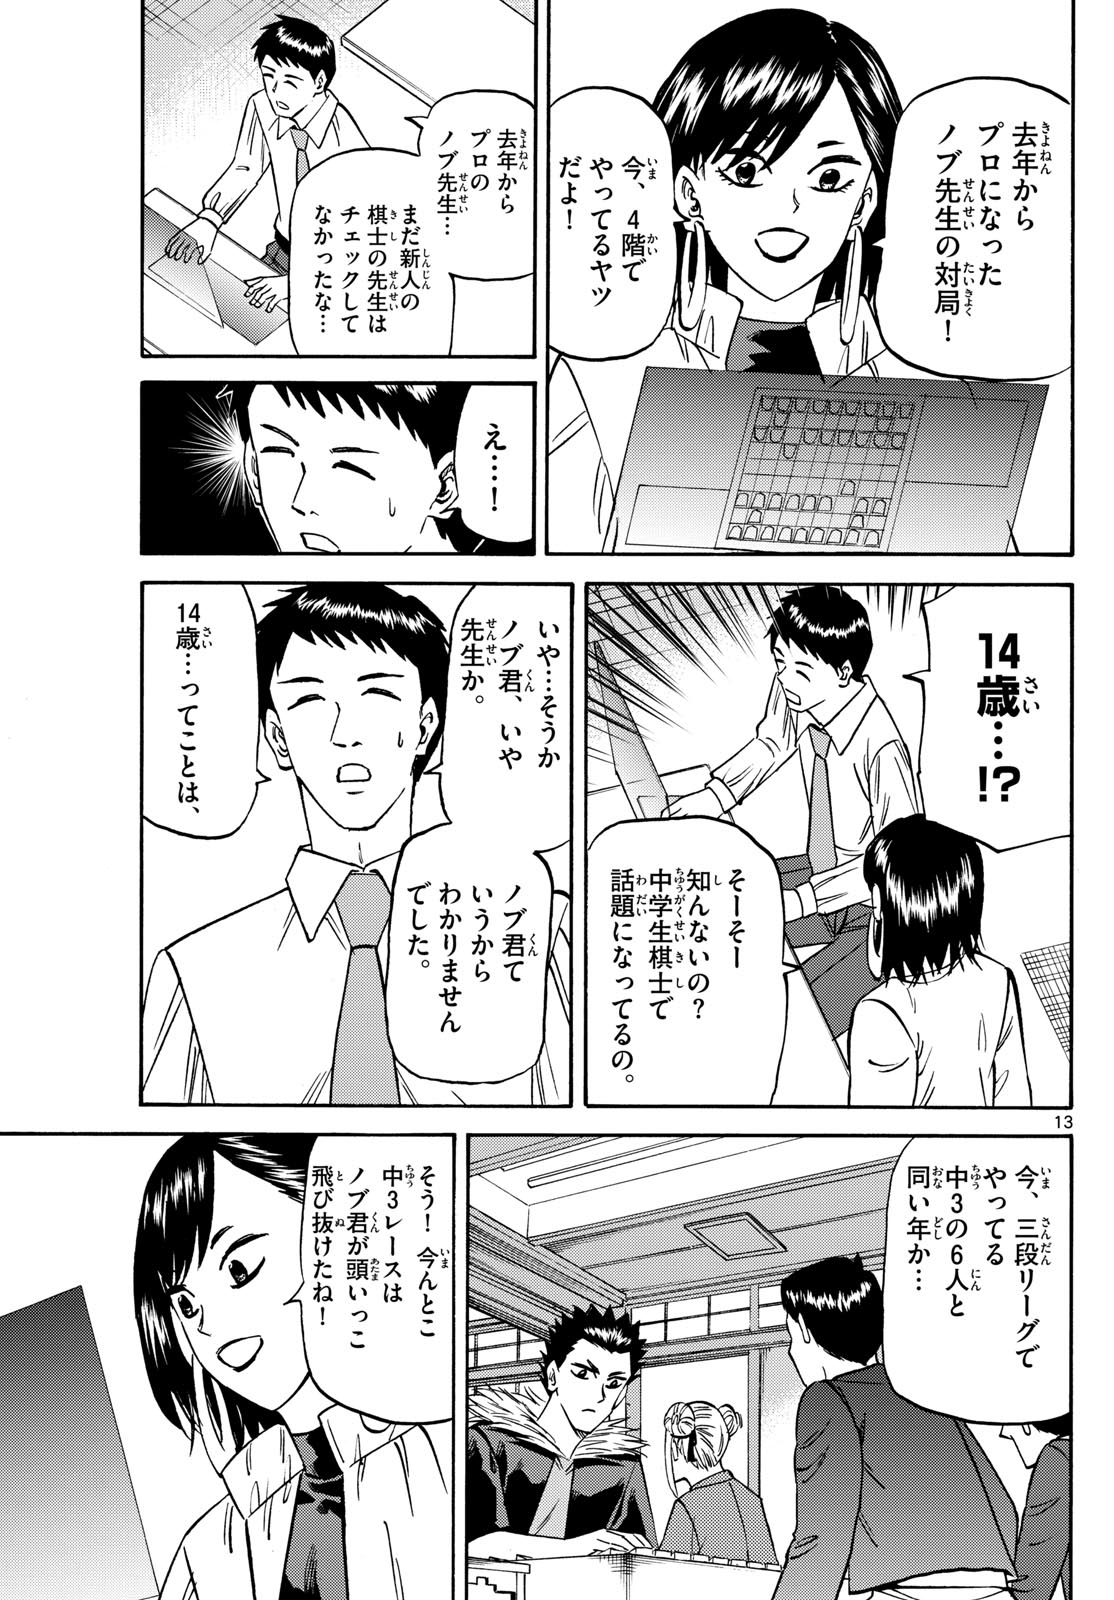 Tatsu to Ichigo - Chapter 186 - Page 13